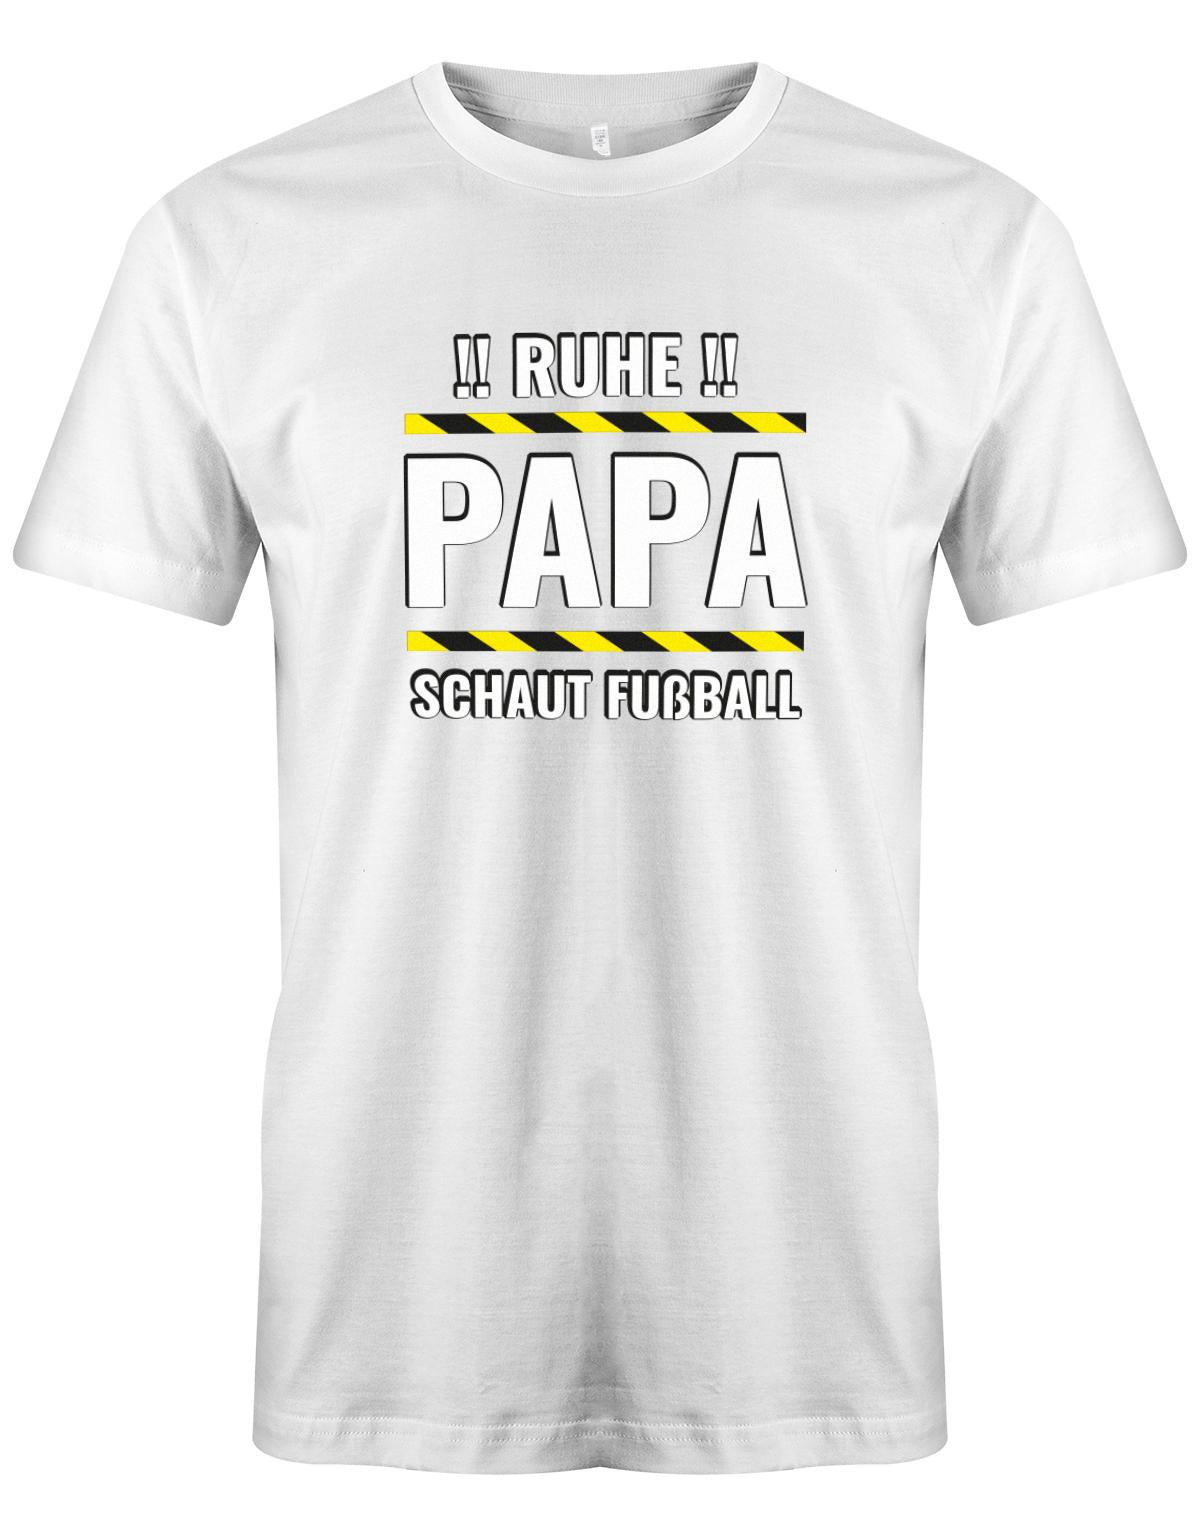 Ruhe-Papa-schaut-Fussball-Herren-Shirt-Weiss